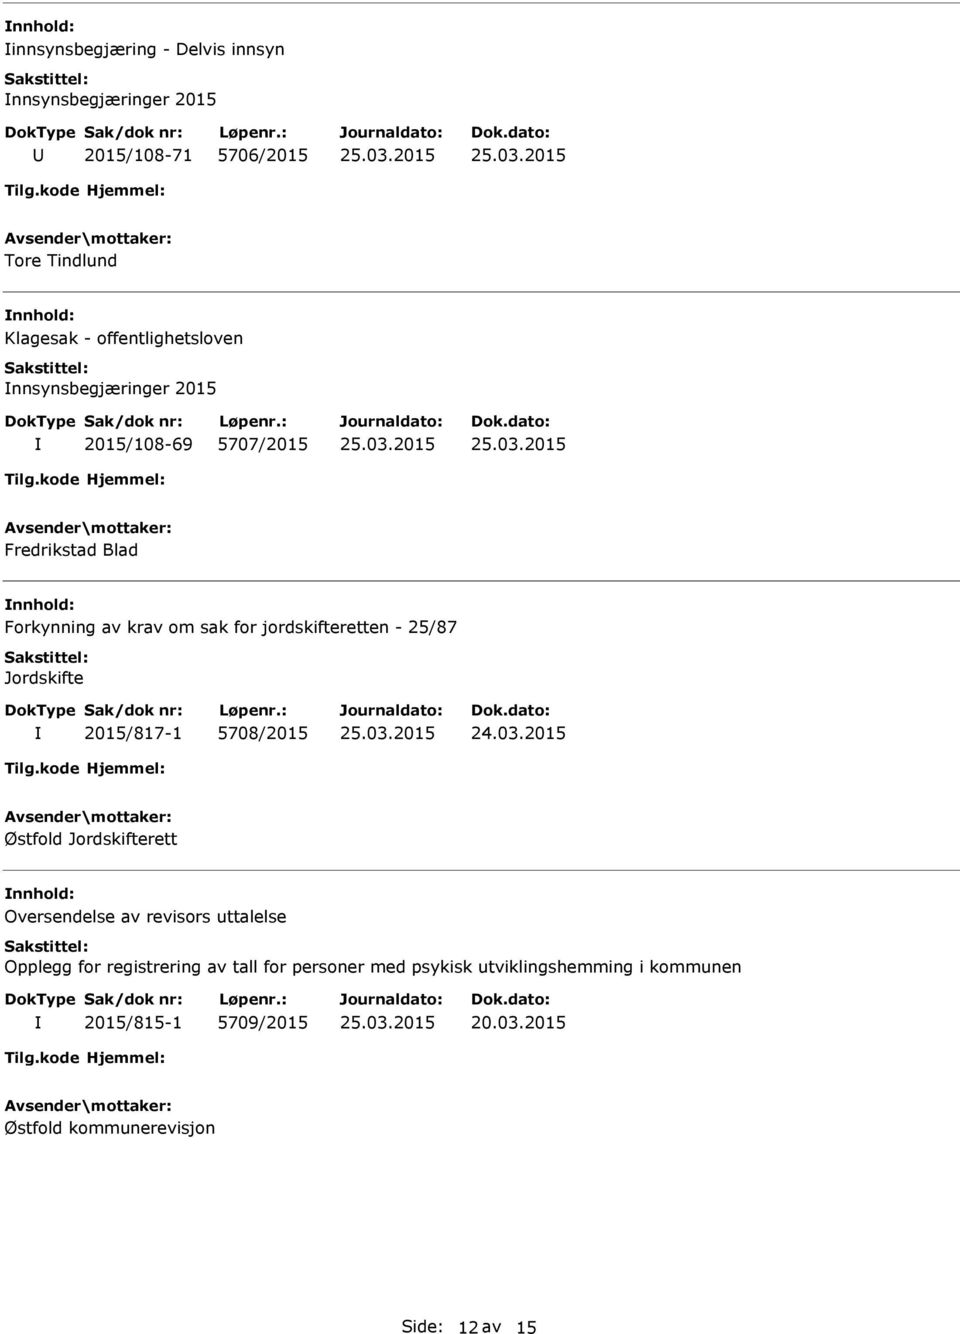 Jordskifte 2015/817-1 5708/2015 Østfold Jordskifterett Oversendelse av revisors uttalelse Opplegg for registrering av